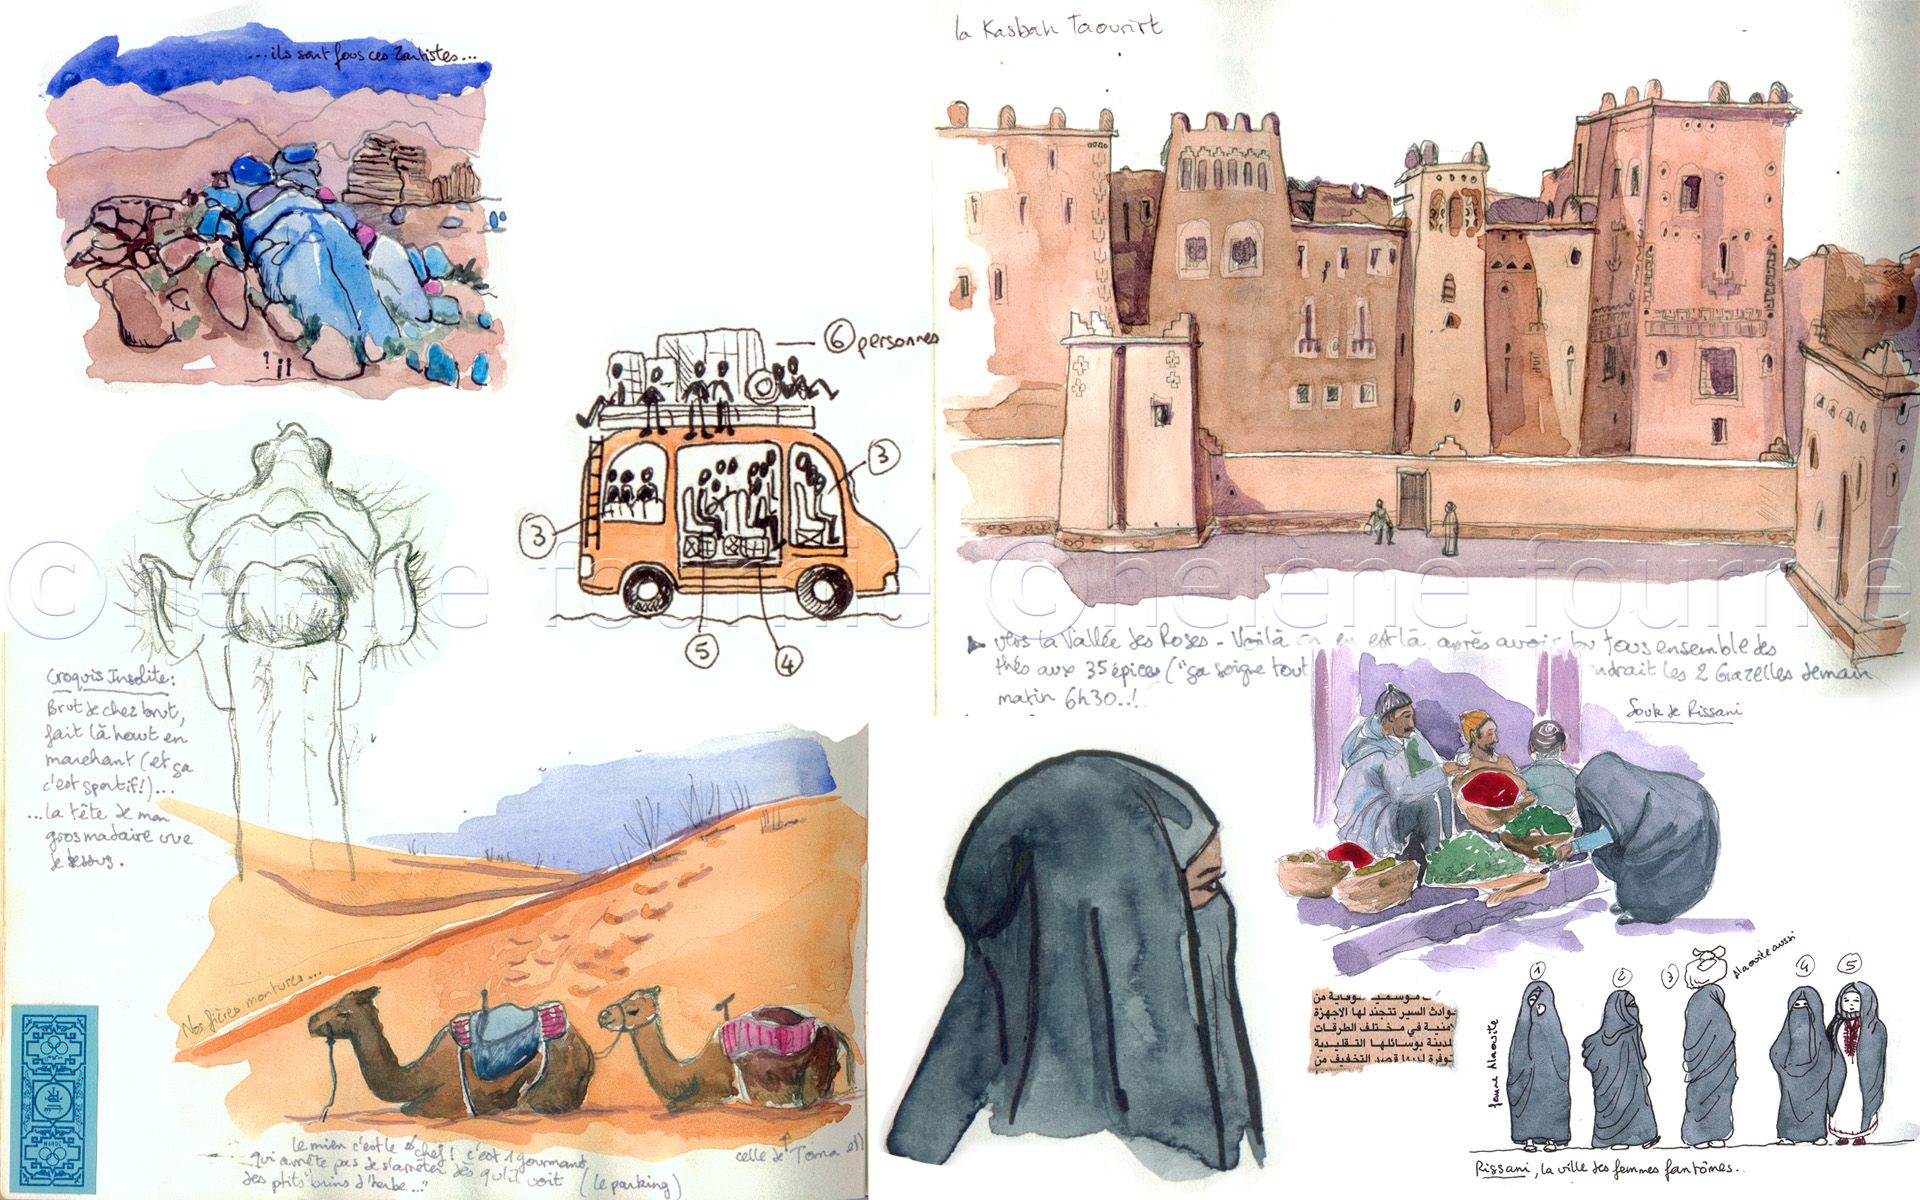 Carnet de voyage Maroc: Cahier de voyage pour organiser, planifier et  garder vos souvenirs de vacances au Maroc. Cadeau idéal pour les  globe-trotters  veulent découvrir le monde. by Globe Tripper